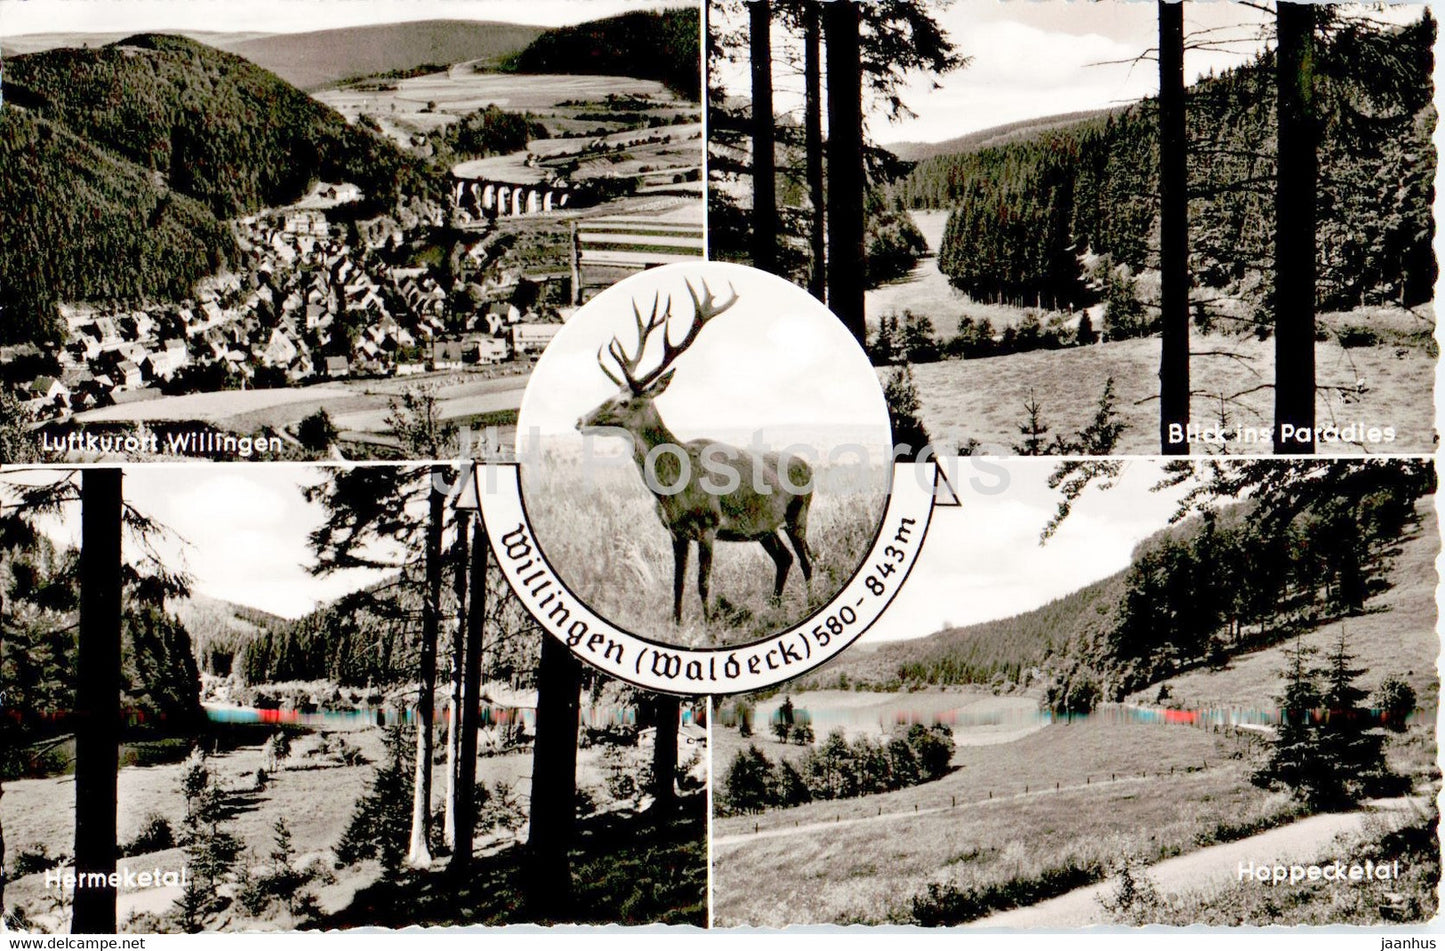 Willingen - Waldeck - Hermeketal - Hoppecketal - animals - deer - old postcard - 1959 - Germany - used - JH Postcards